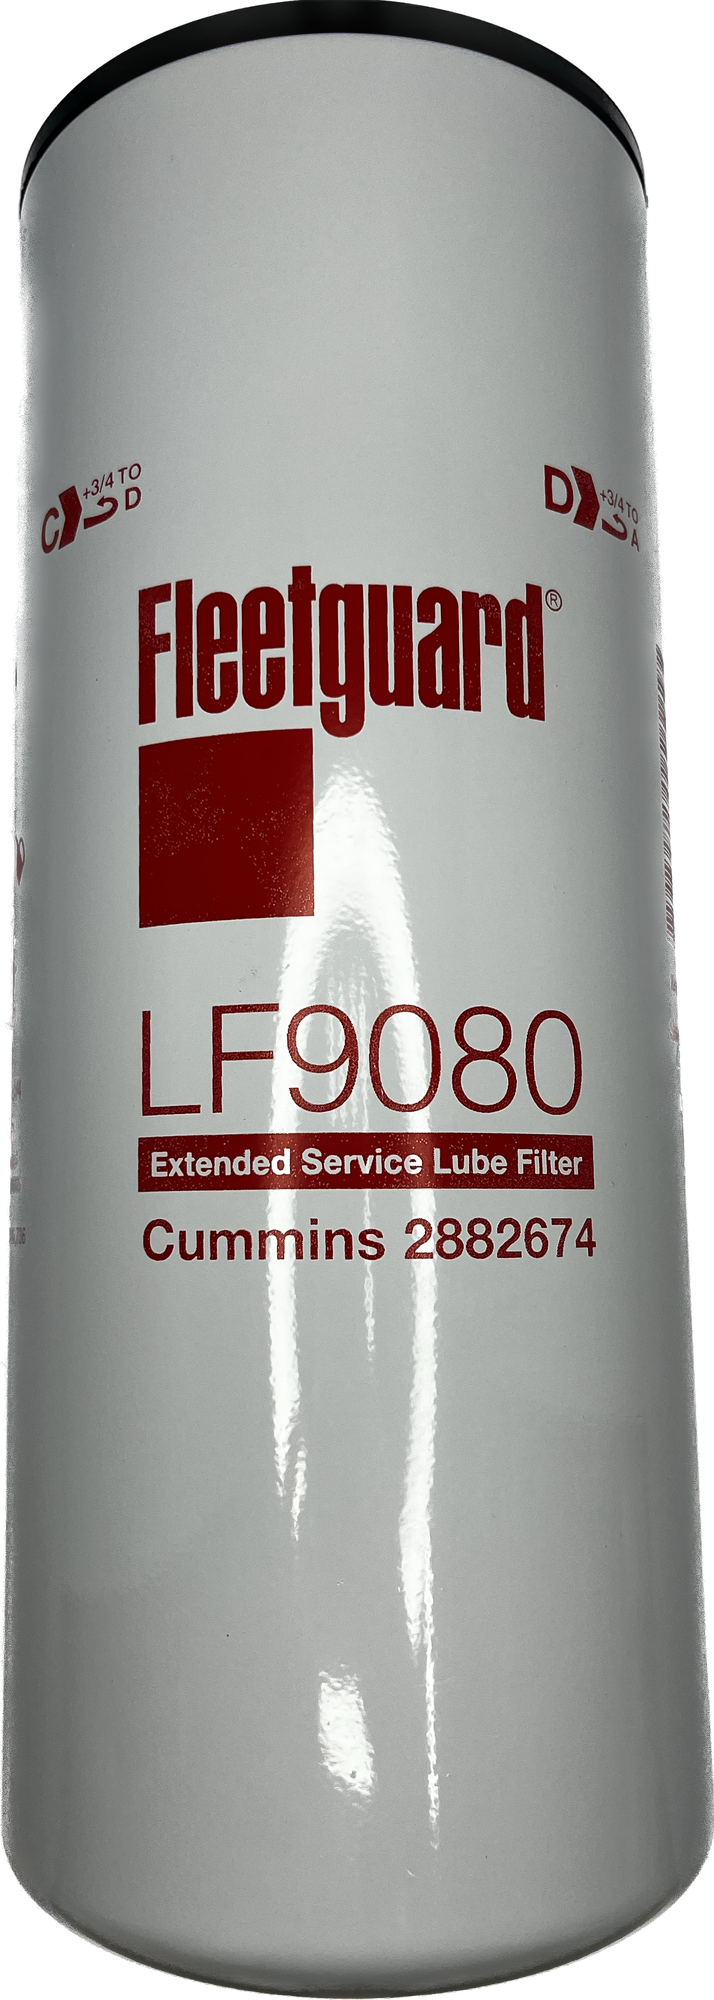 Фильтр Масляный Fleetguard - Lf9080 Fleetguard арт. LF9080